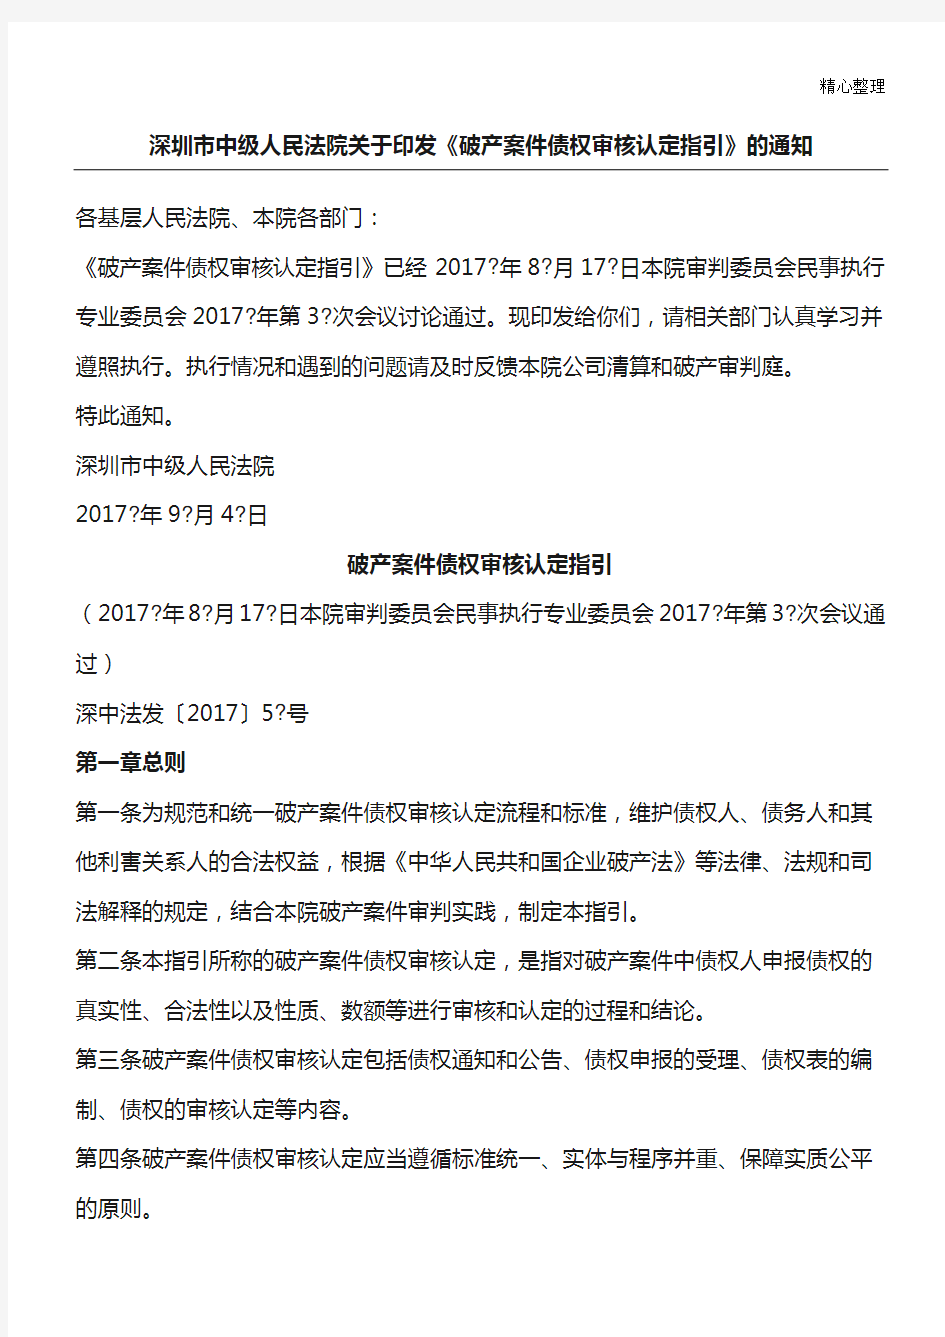 深圳中院破产案件债权审核认定指引